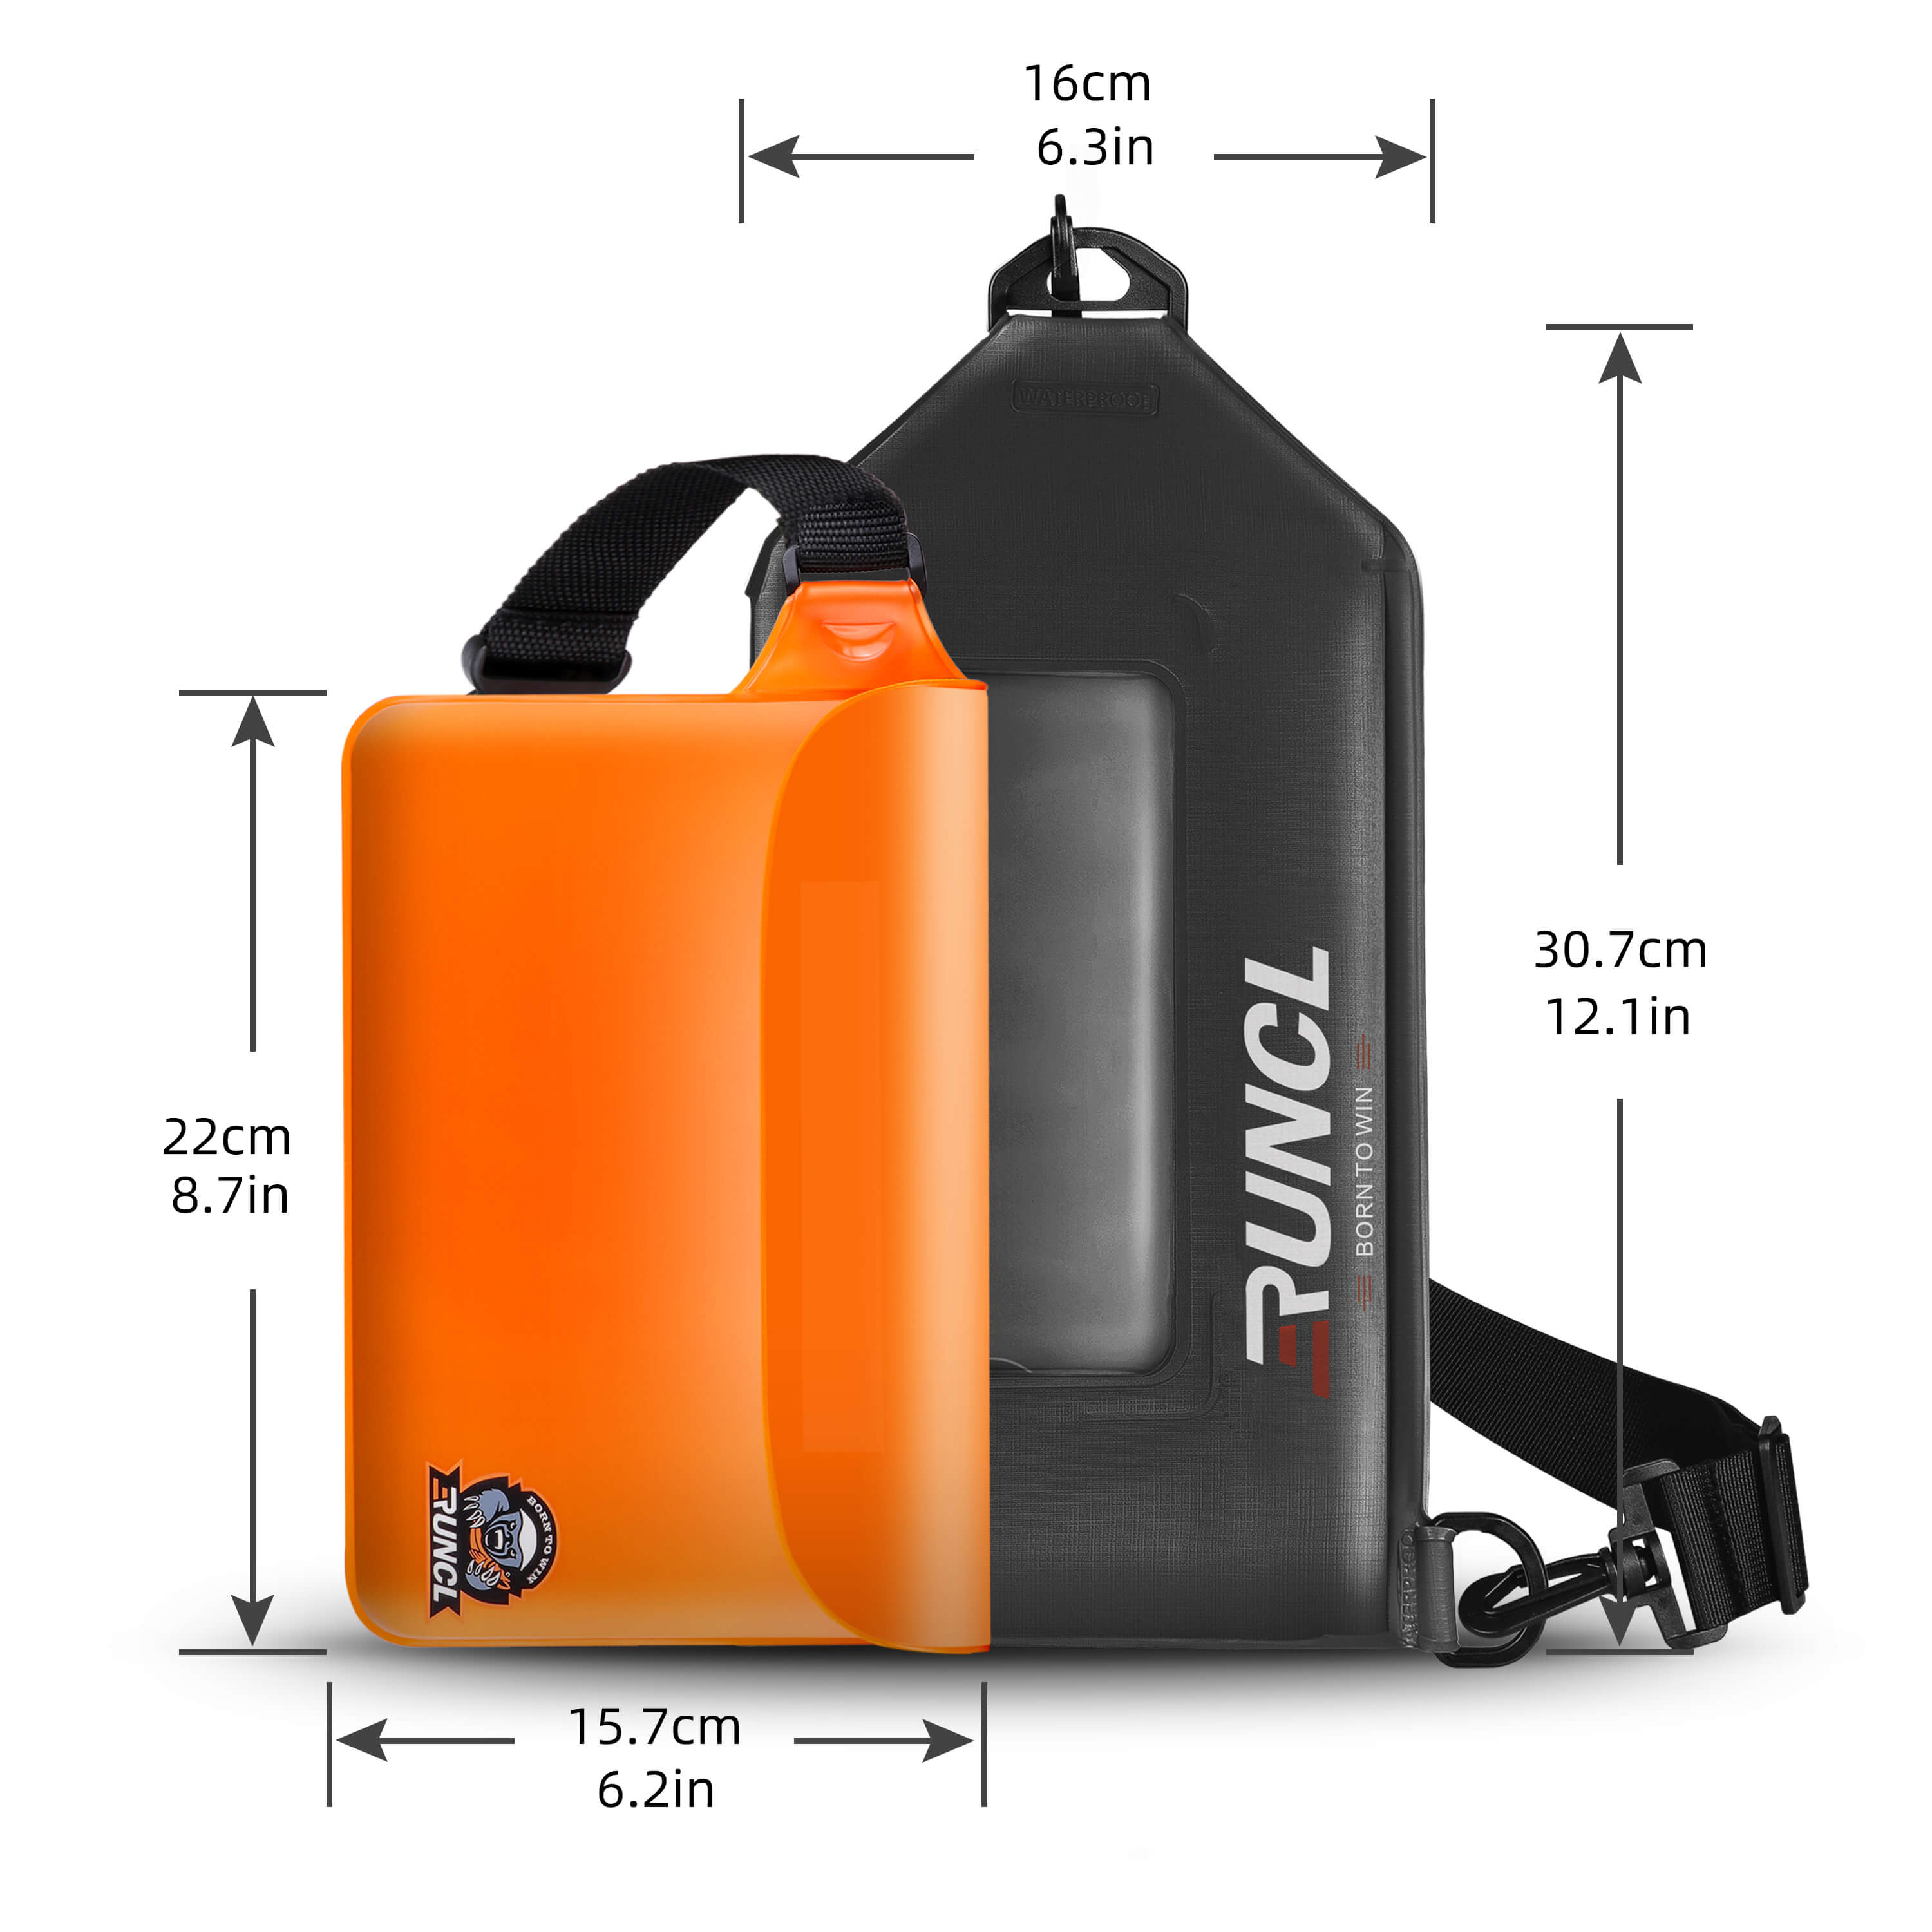 RUNCL Waterproof Waist Dry Bag – Runcl